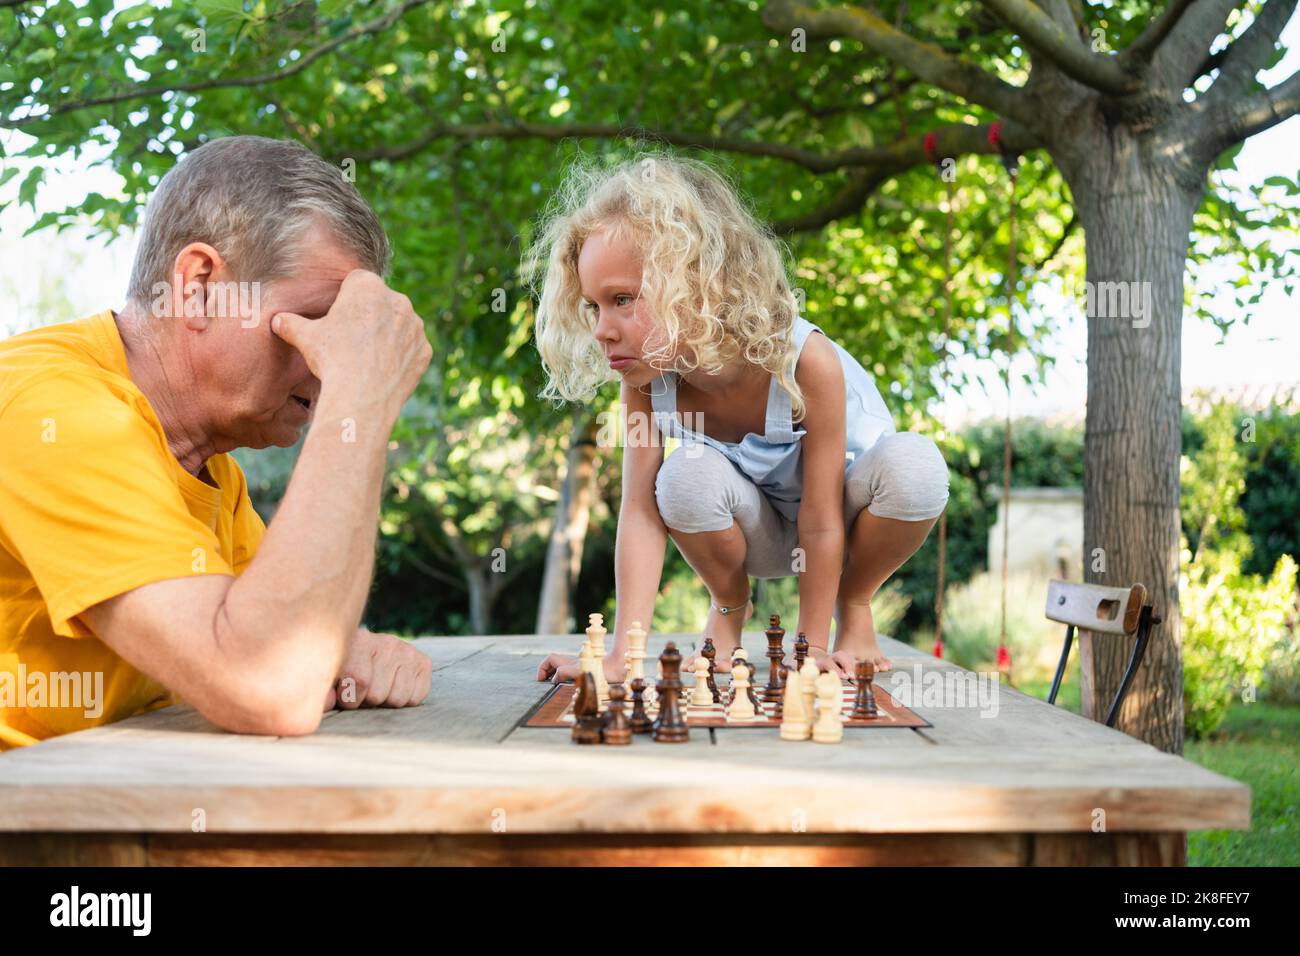 Grand-père jouant aux échecs avec la petite-fille assise sur une table Banque D'Images